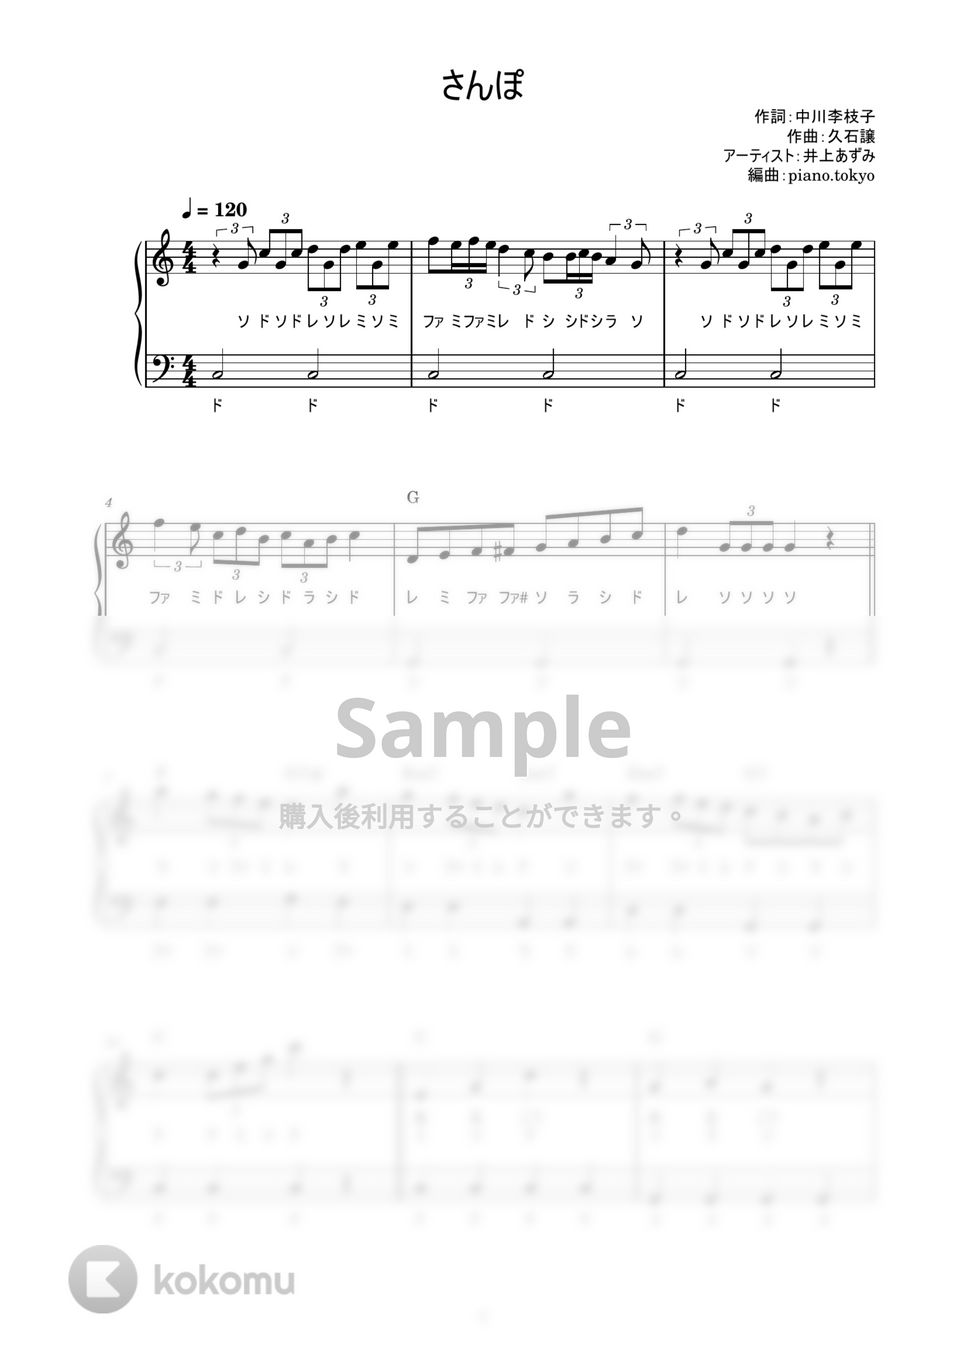 井上あずみ - さんぽ (かんたん / 歌詞付き / ドレミ付き / 初心者) by piano.tokyo